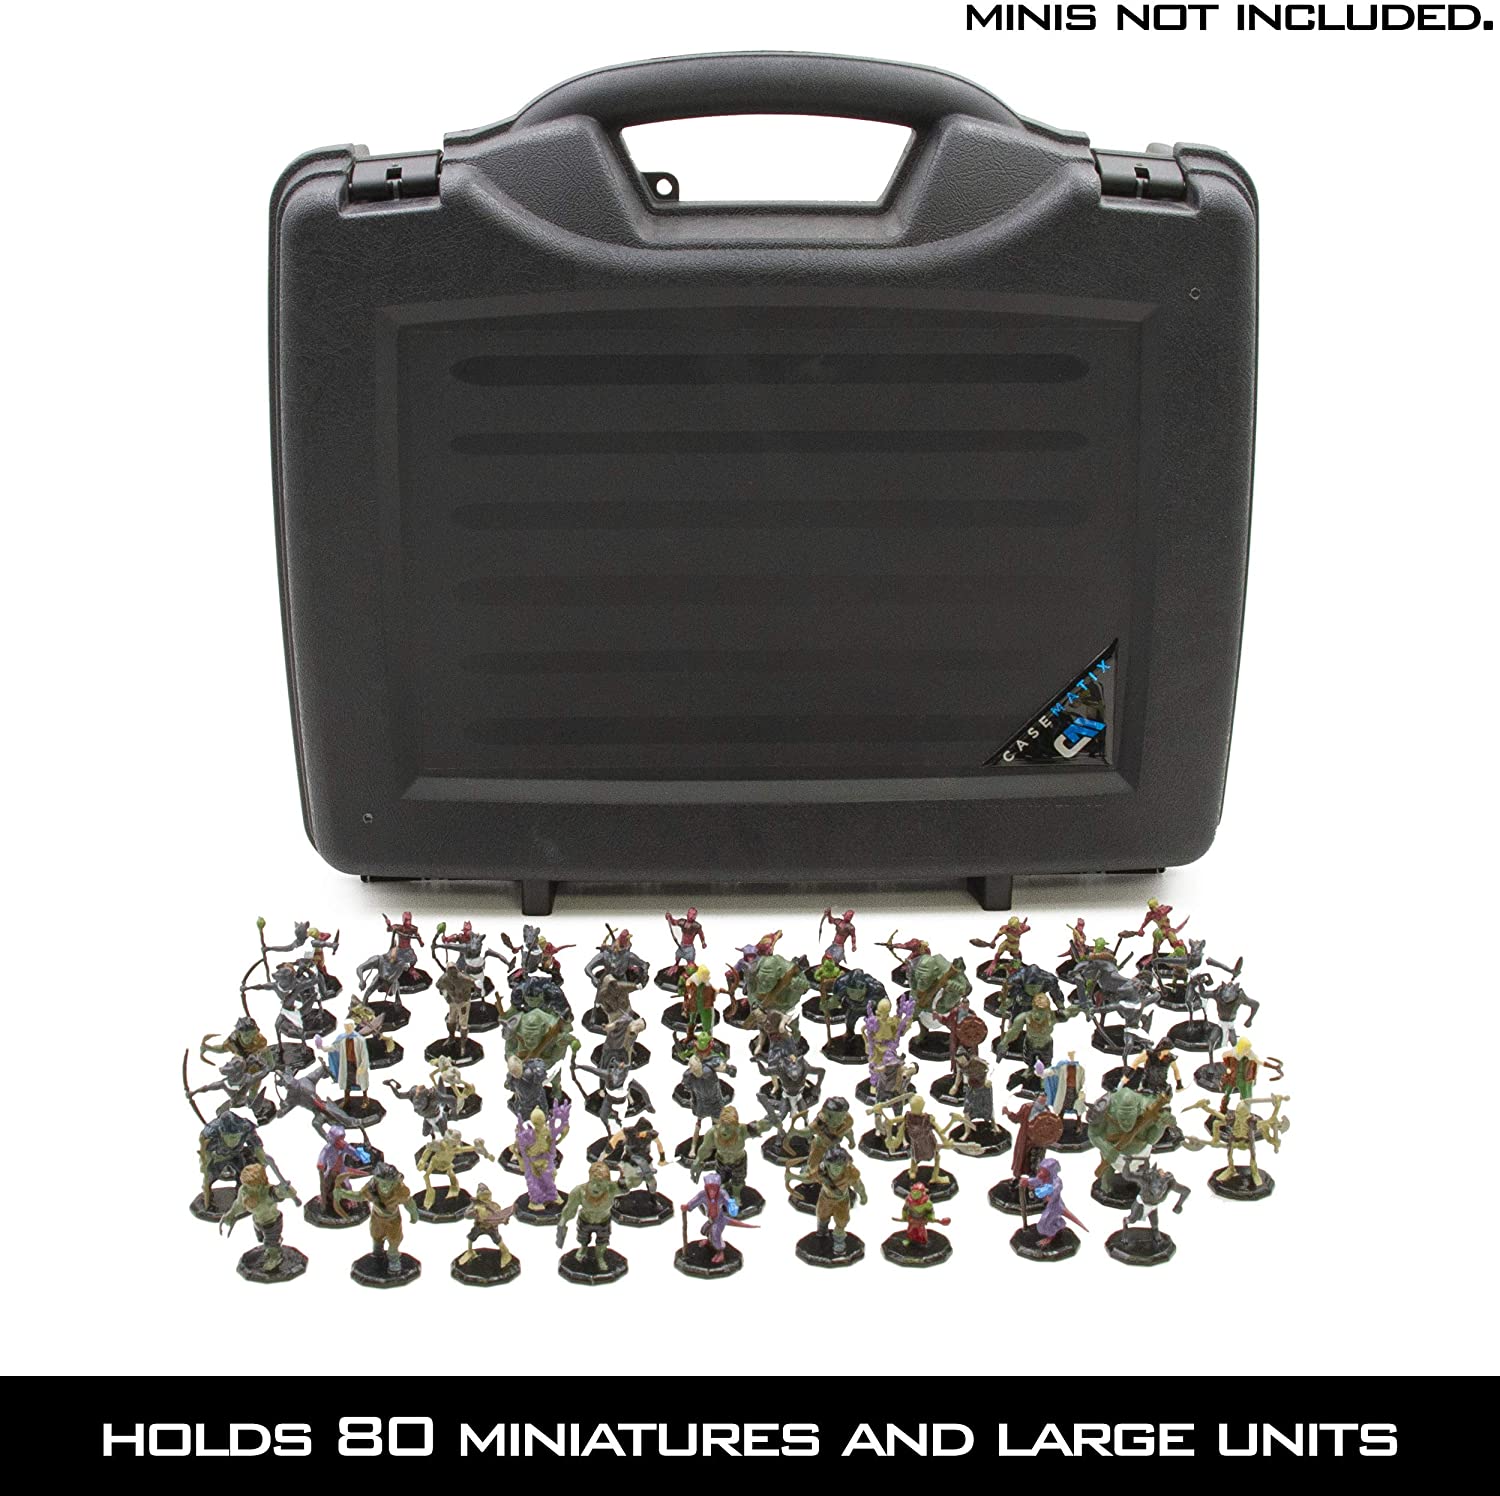 Casematix Miniature Storage Case - 30 ct Organizer for Dnd, Warhammer 40K Miniatures - Case Only, Size: 17 x 12.5 x 3.75, Black